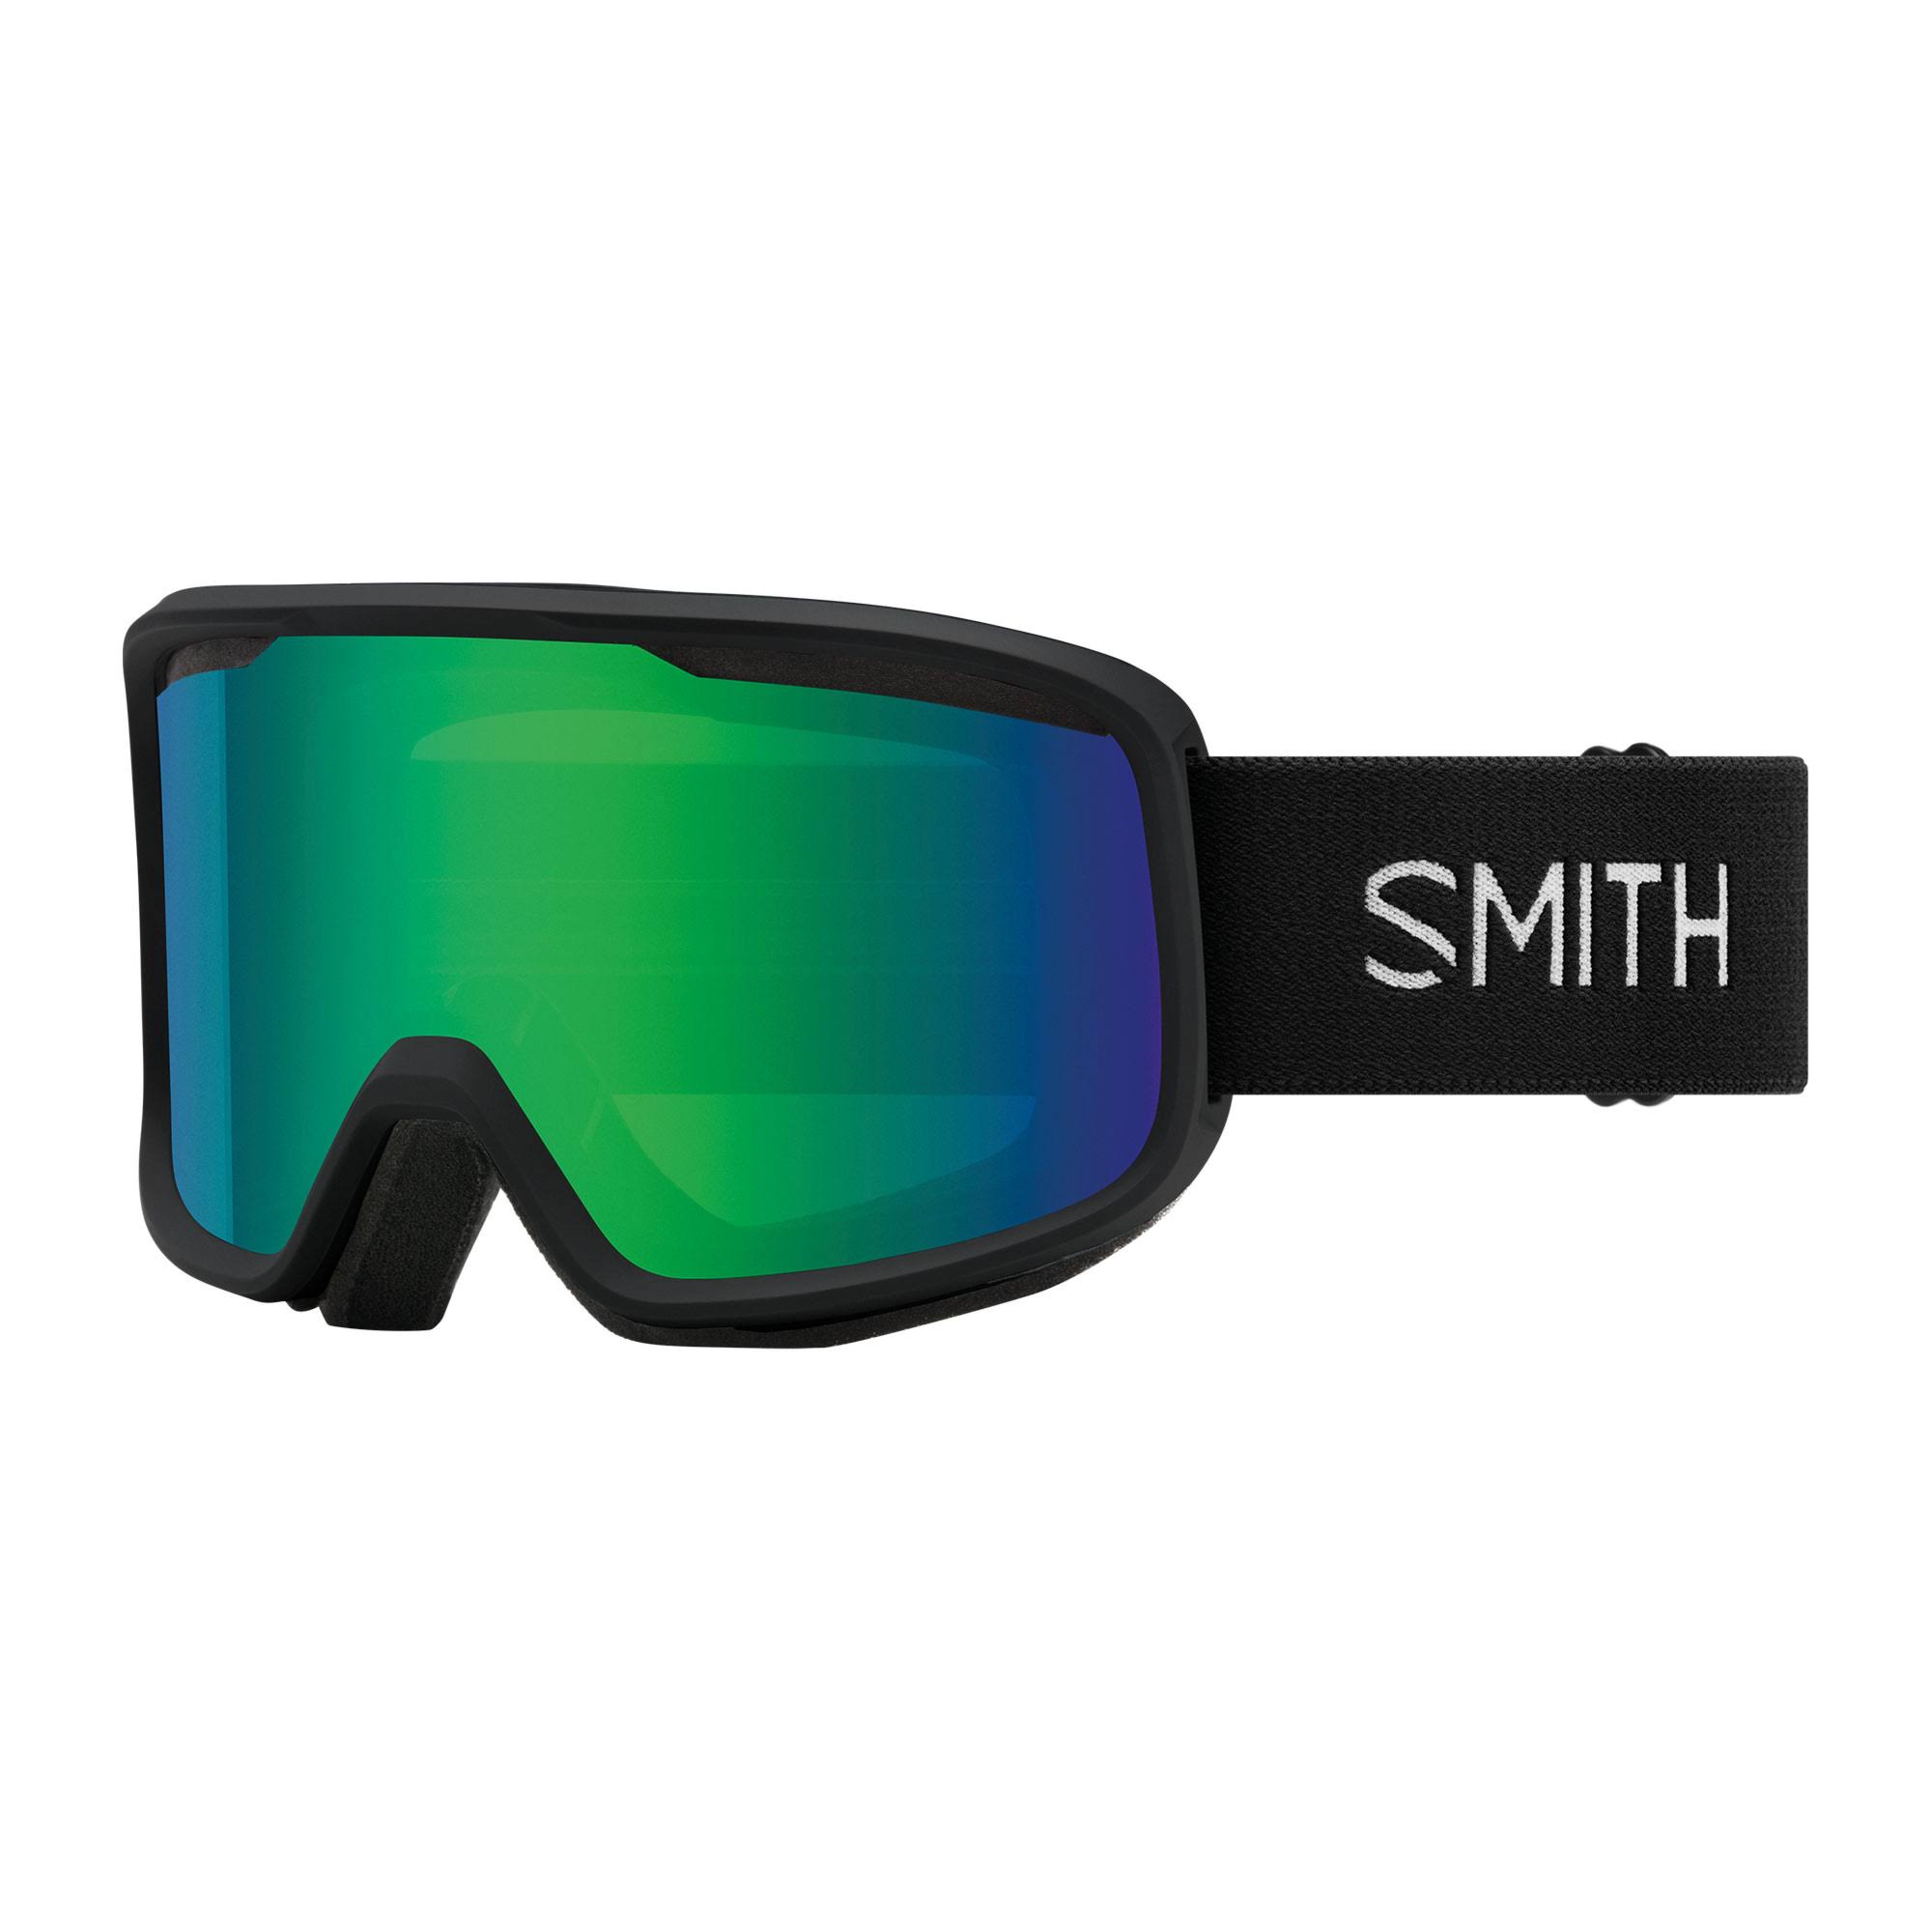 Smith Frontier Goggles Black Green Sol-X Mirror M004292QJ99C5